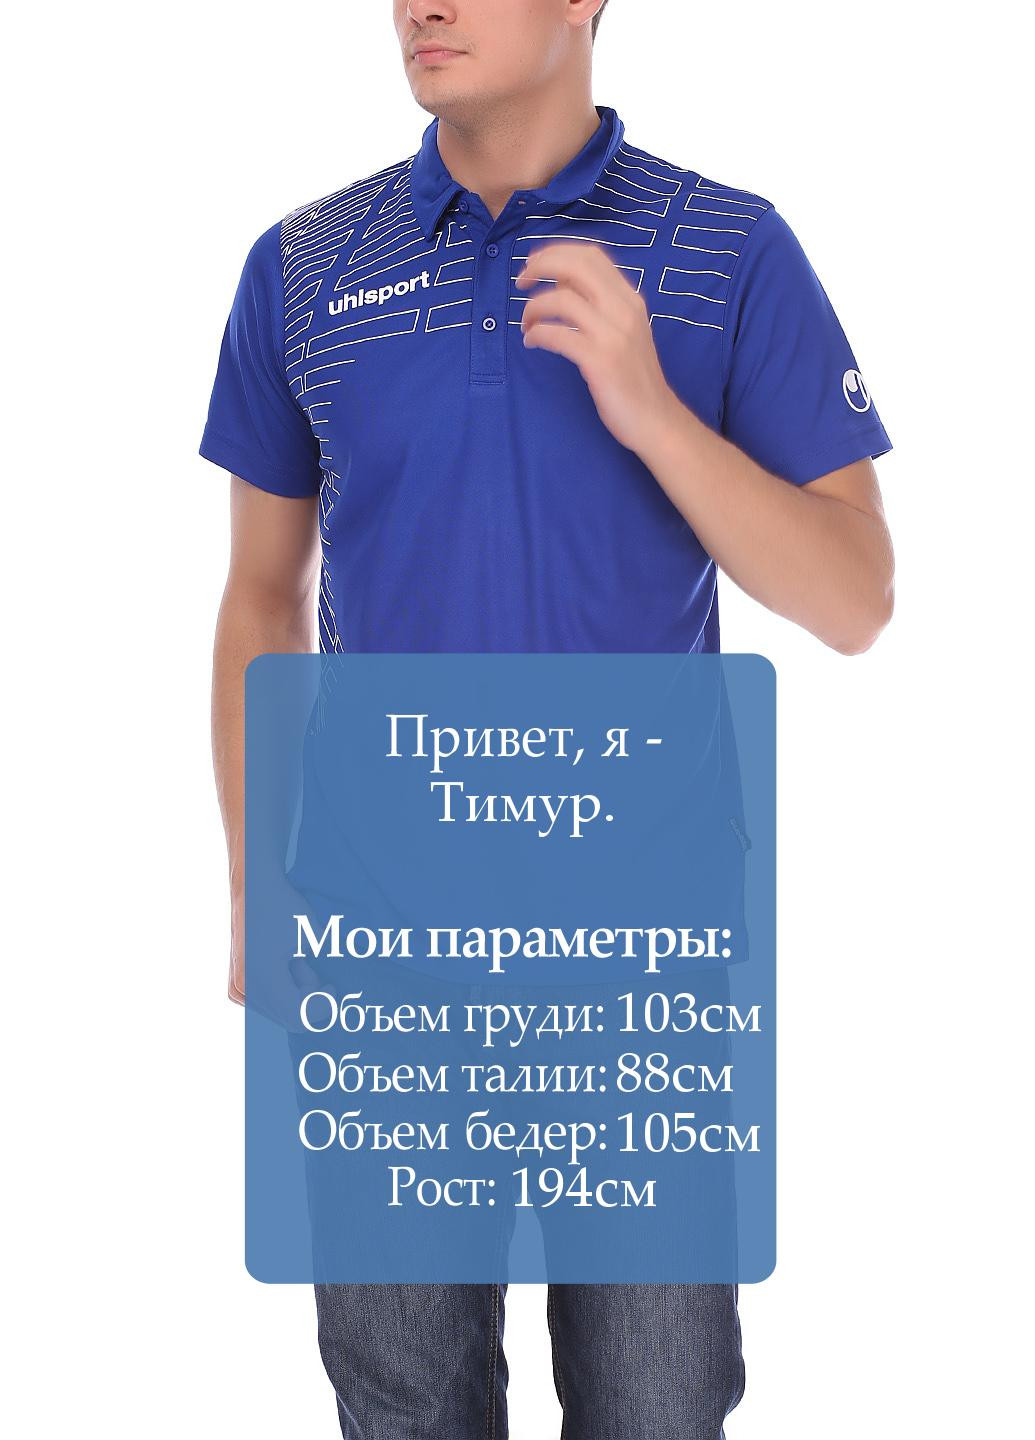 Синяя футболка-поло для мужчин Uhlsport однотонная